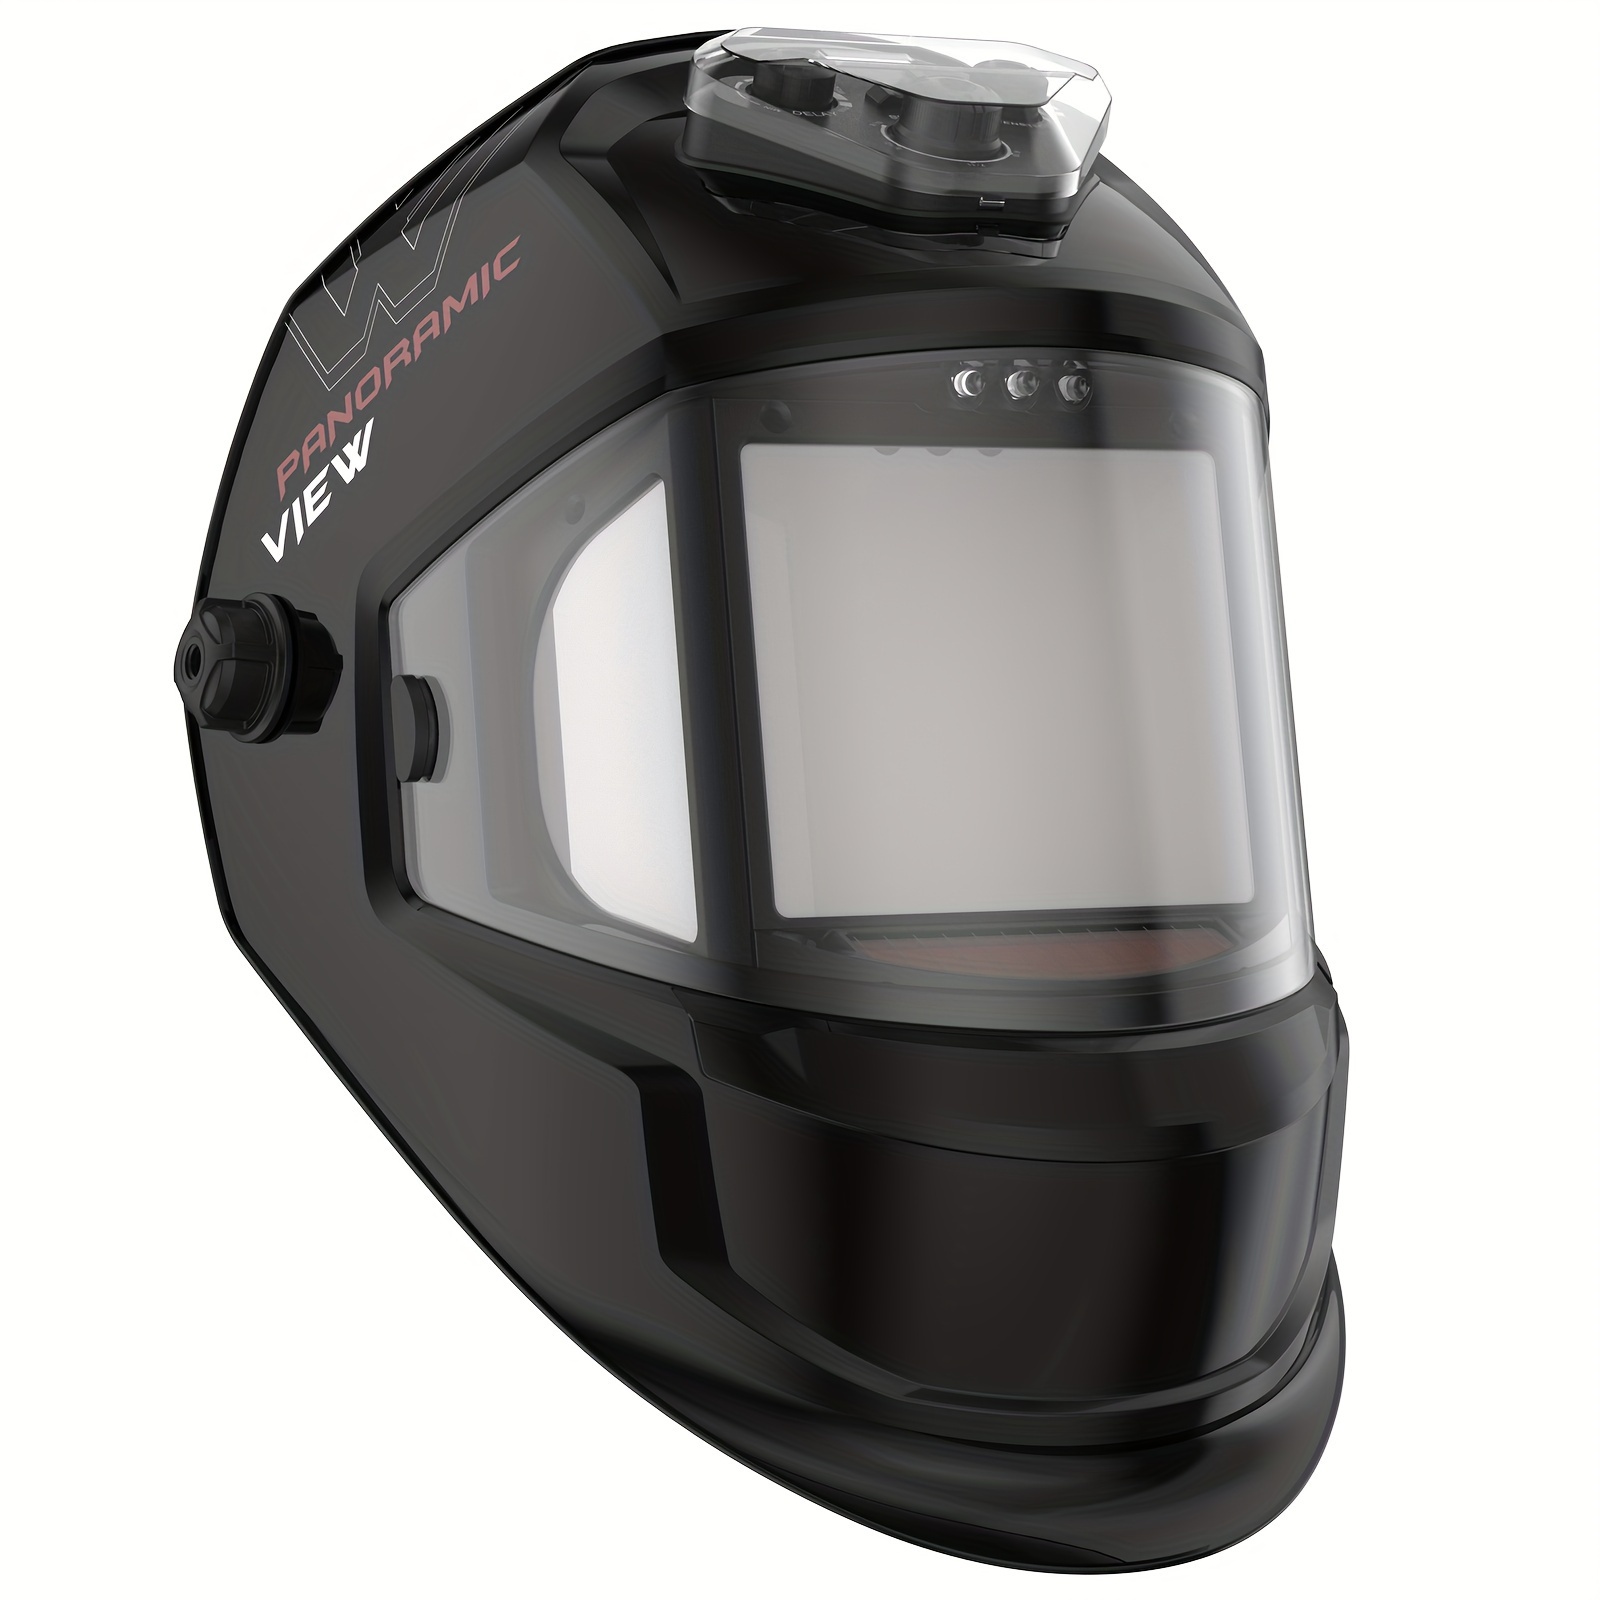 

Panoramic View Auto Darkening Welding Helmet, Large Viewing True Color 6 Arc Sensor Welder Mask